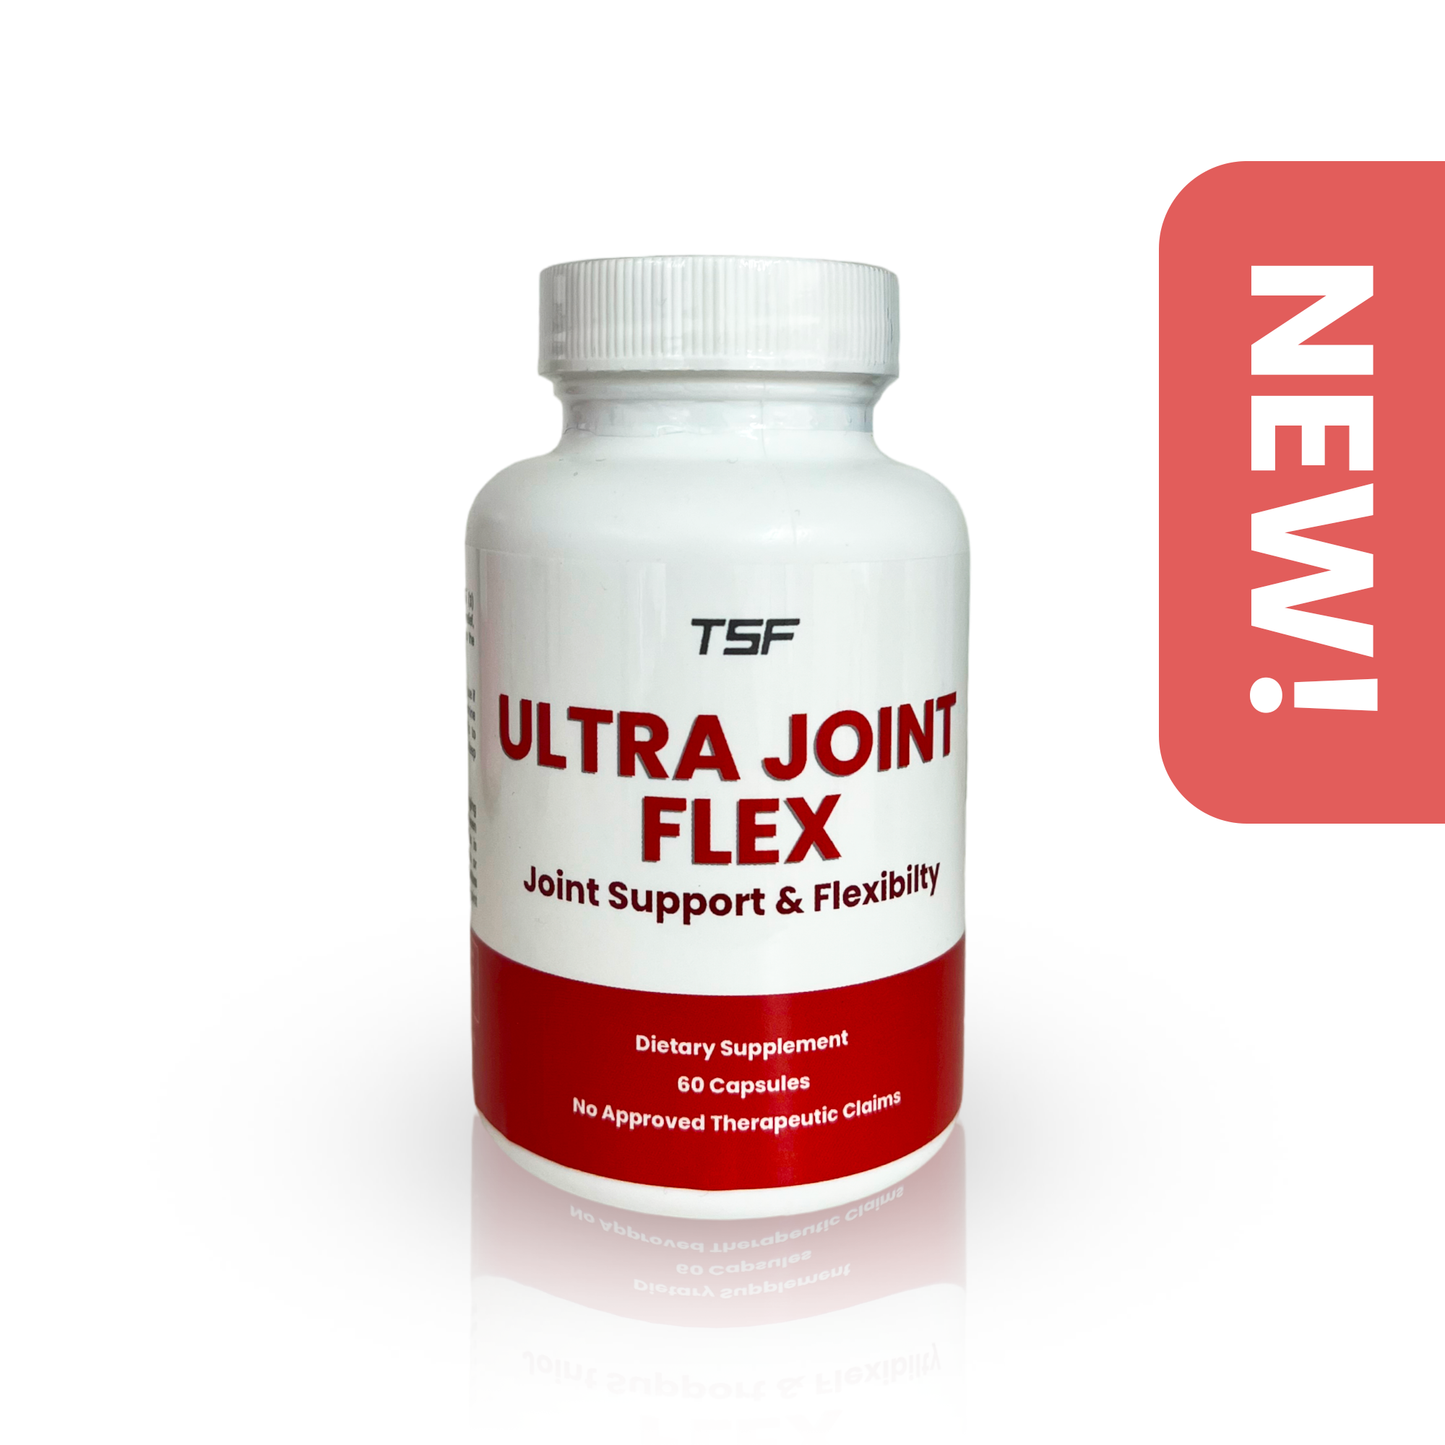 Ultra Joint Flex